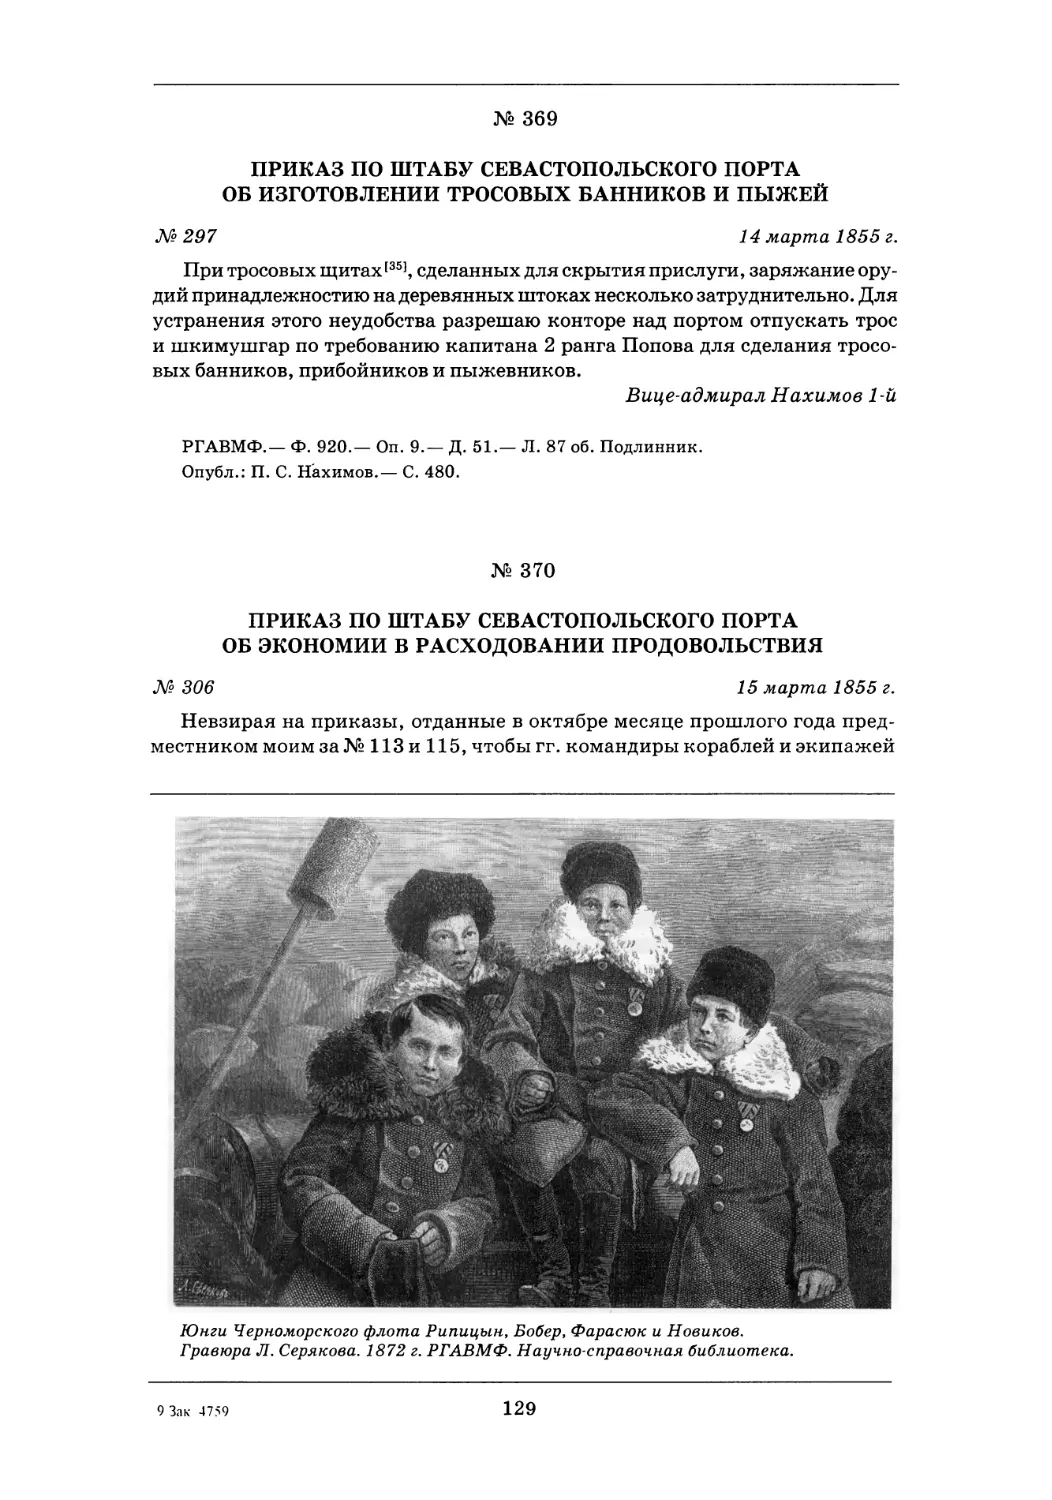 370. 15 марта 1855 г.— Приказ по штабу Севастопольского порта об экономии в расходовании продовольствия